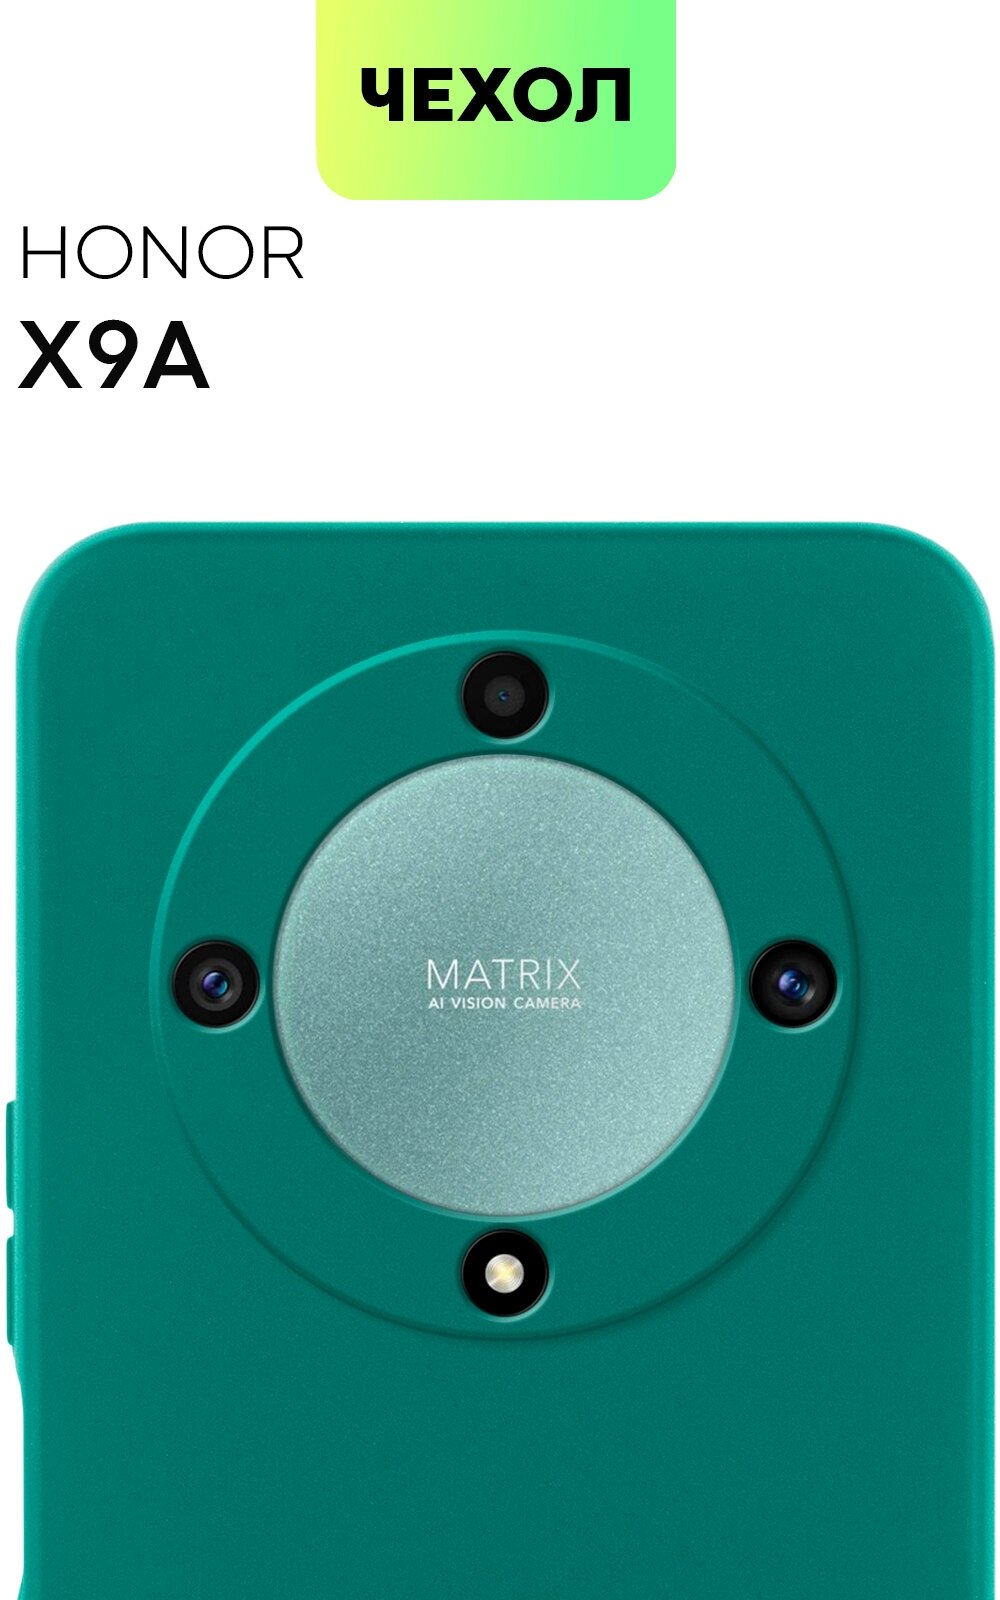 Чехол для Honor X9a и Honor Magic5 Lite (Хонор Икс 9а, Х9а), тонкий, защита камеры, силиконовый чехол, с матовым покрытием, темно-зеленый, BROSCORP